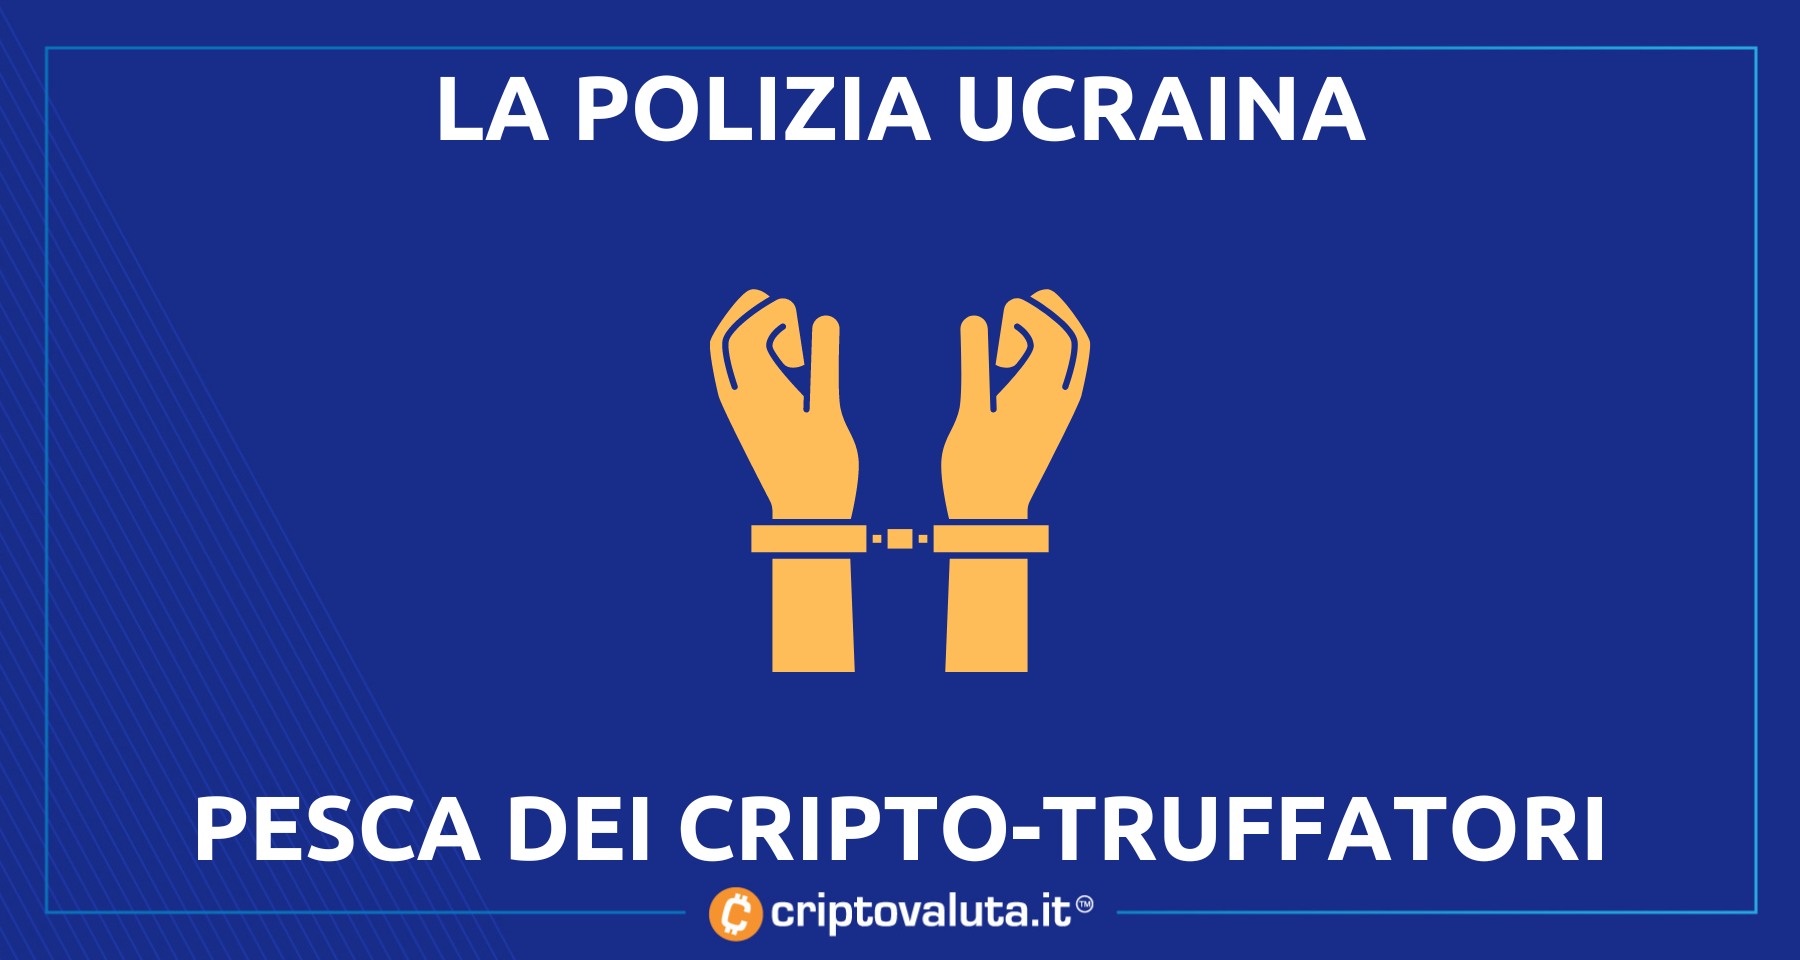 Crypto-truffe sgominate dalla polizia ucraina | La Blockchain è un posto sicuro!